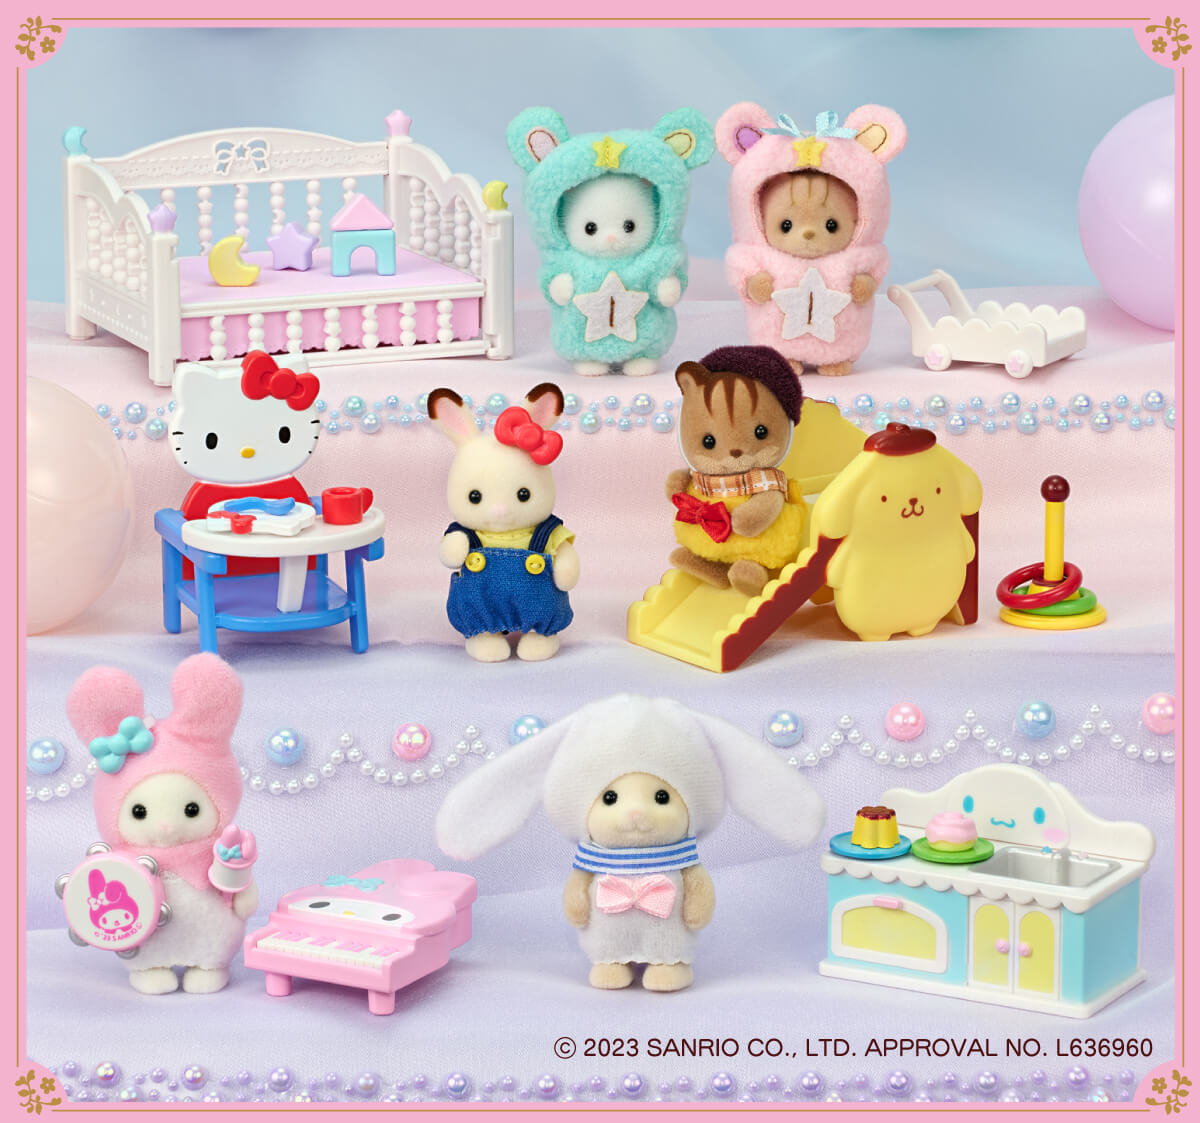 シルバニアファミリー × サンリオキャラクターズ 赤ちゃんとなかよし家具セットおもちゃ/ぬいぐるみ